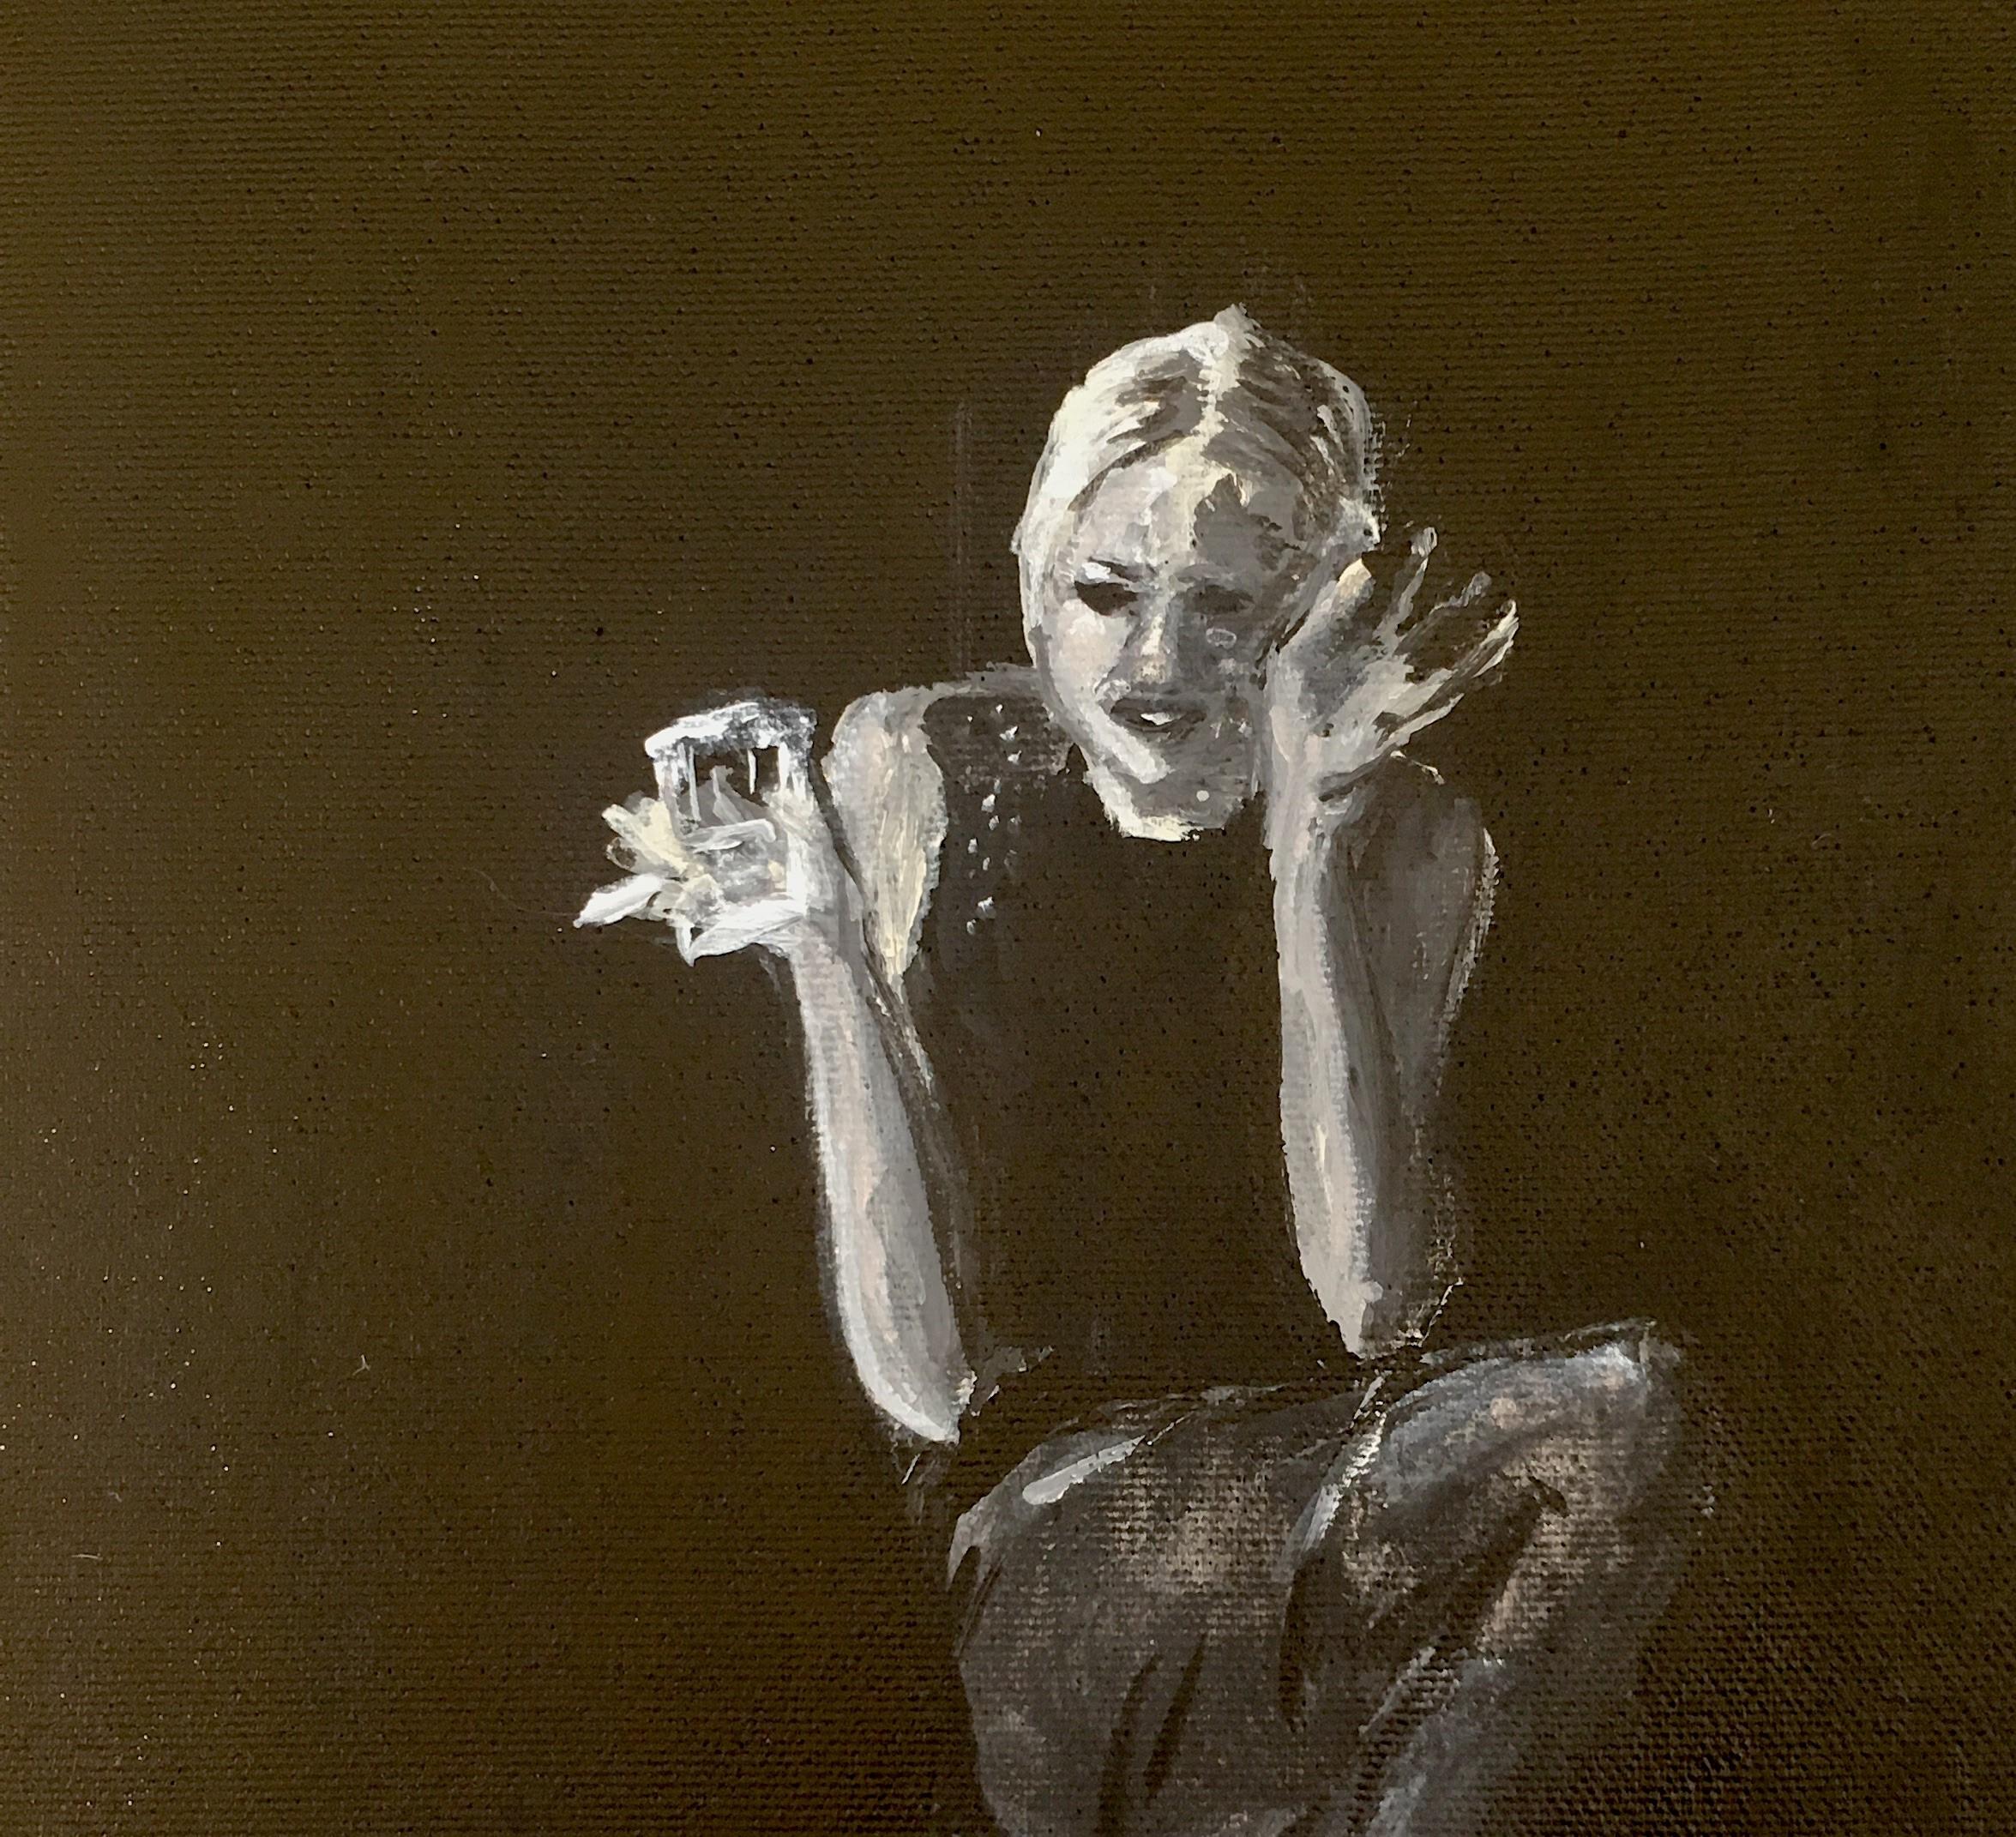 Peinture acrylique sur toile, Edie Sedgwick, 2020 - Noir Portrait Painting par Manuel Santelices